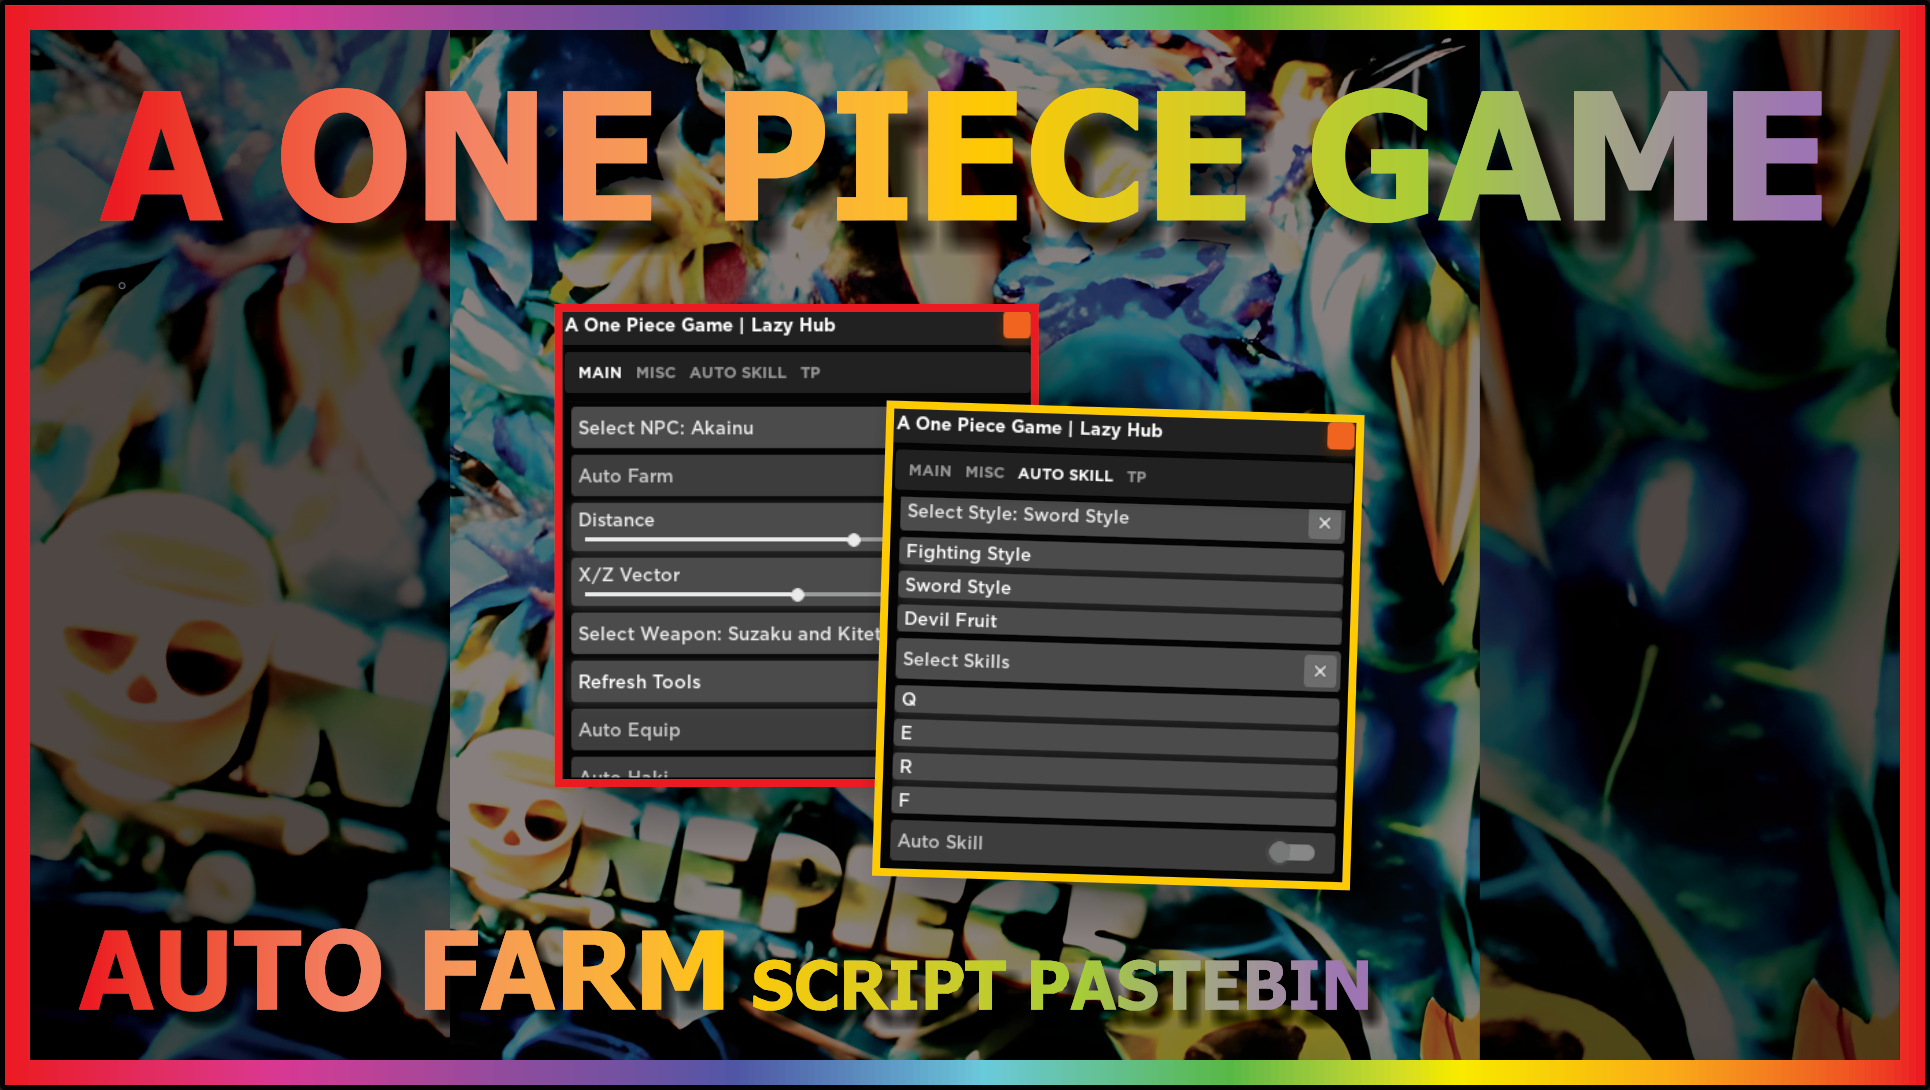 A 0ne Piece Game Script Pastebin 2022 – DailyPastebin